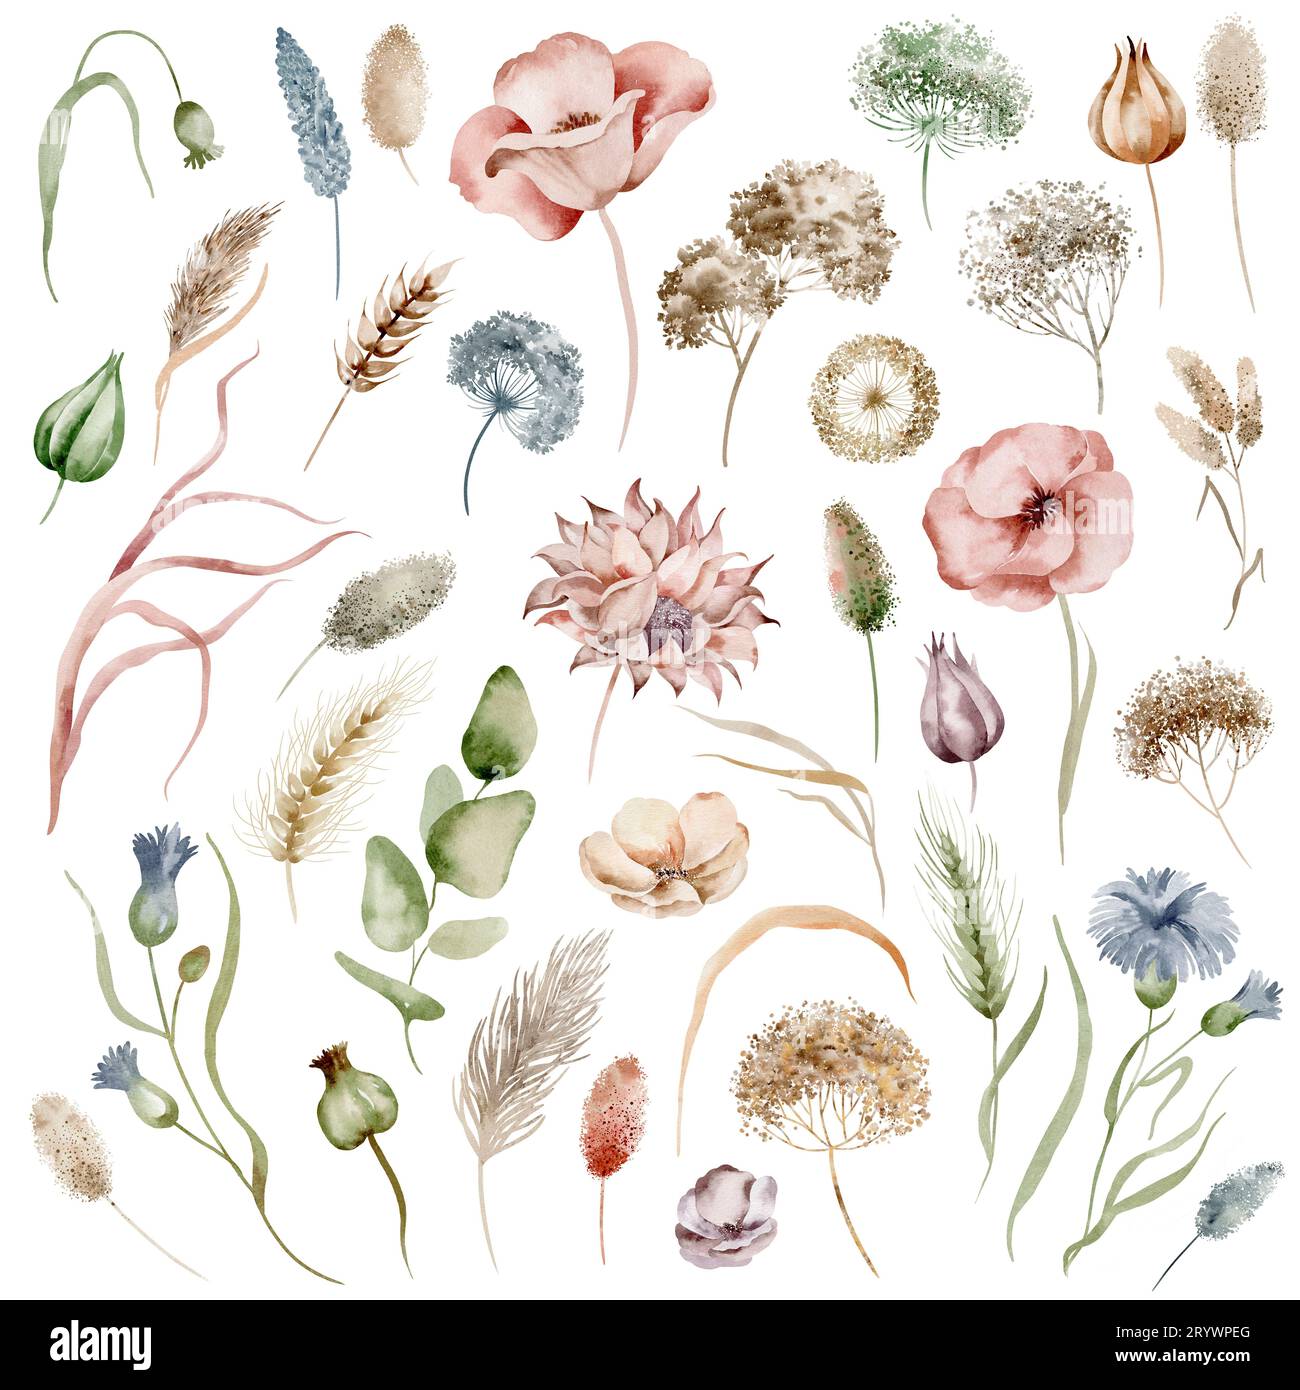 Ensemble d'herbes et de fleurs de champ isolées à l'aquarelle Banque D'Images